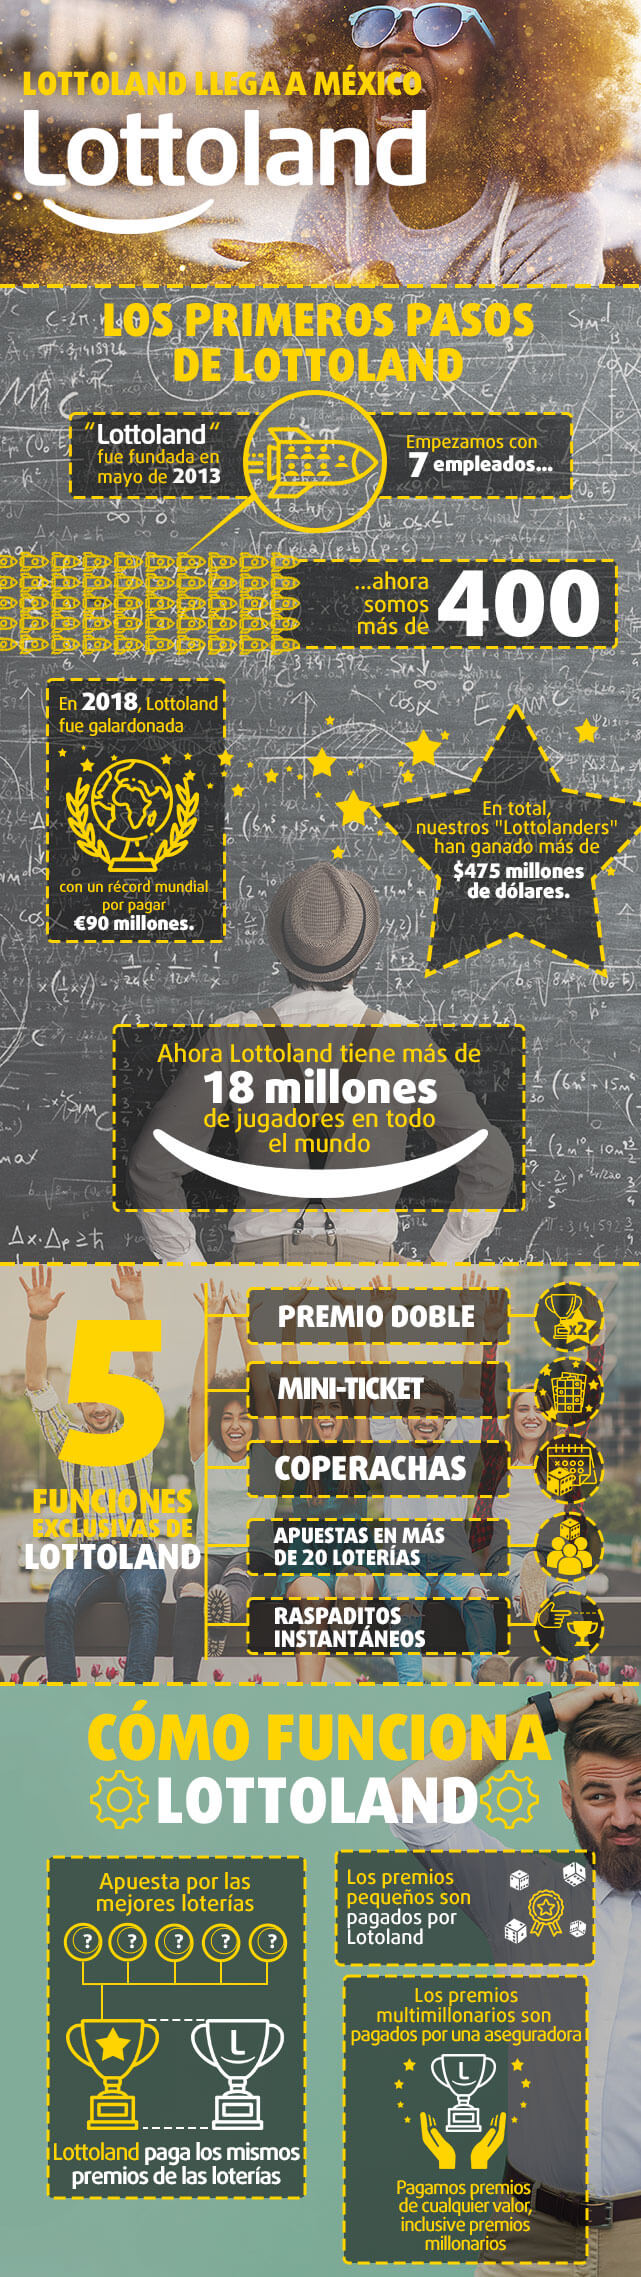 Infografía Todo sobre Lottoland en México primera parte